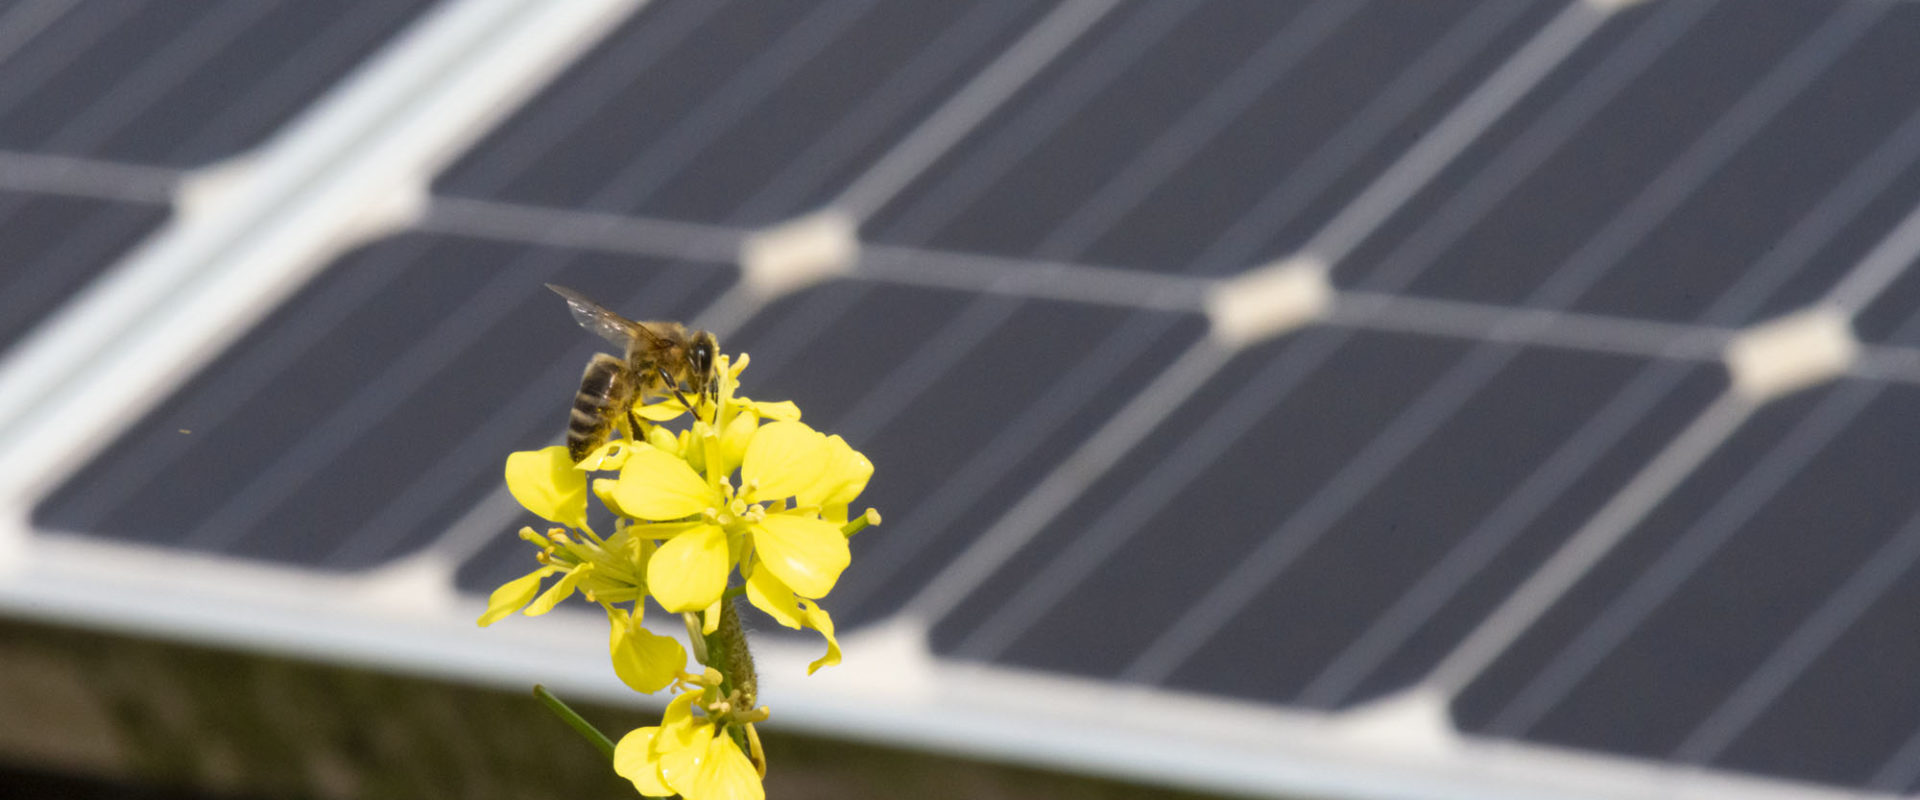 bee on flower in solar farm